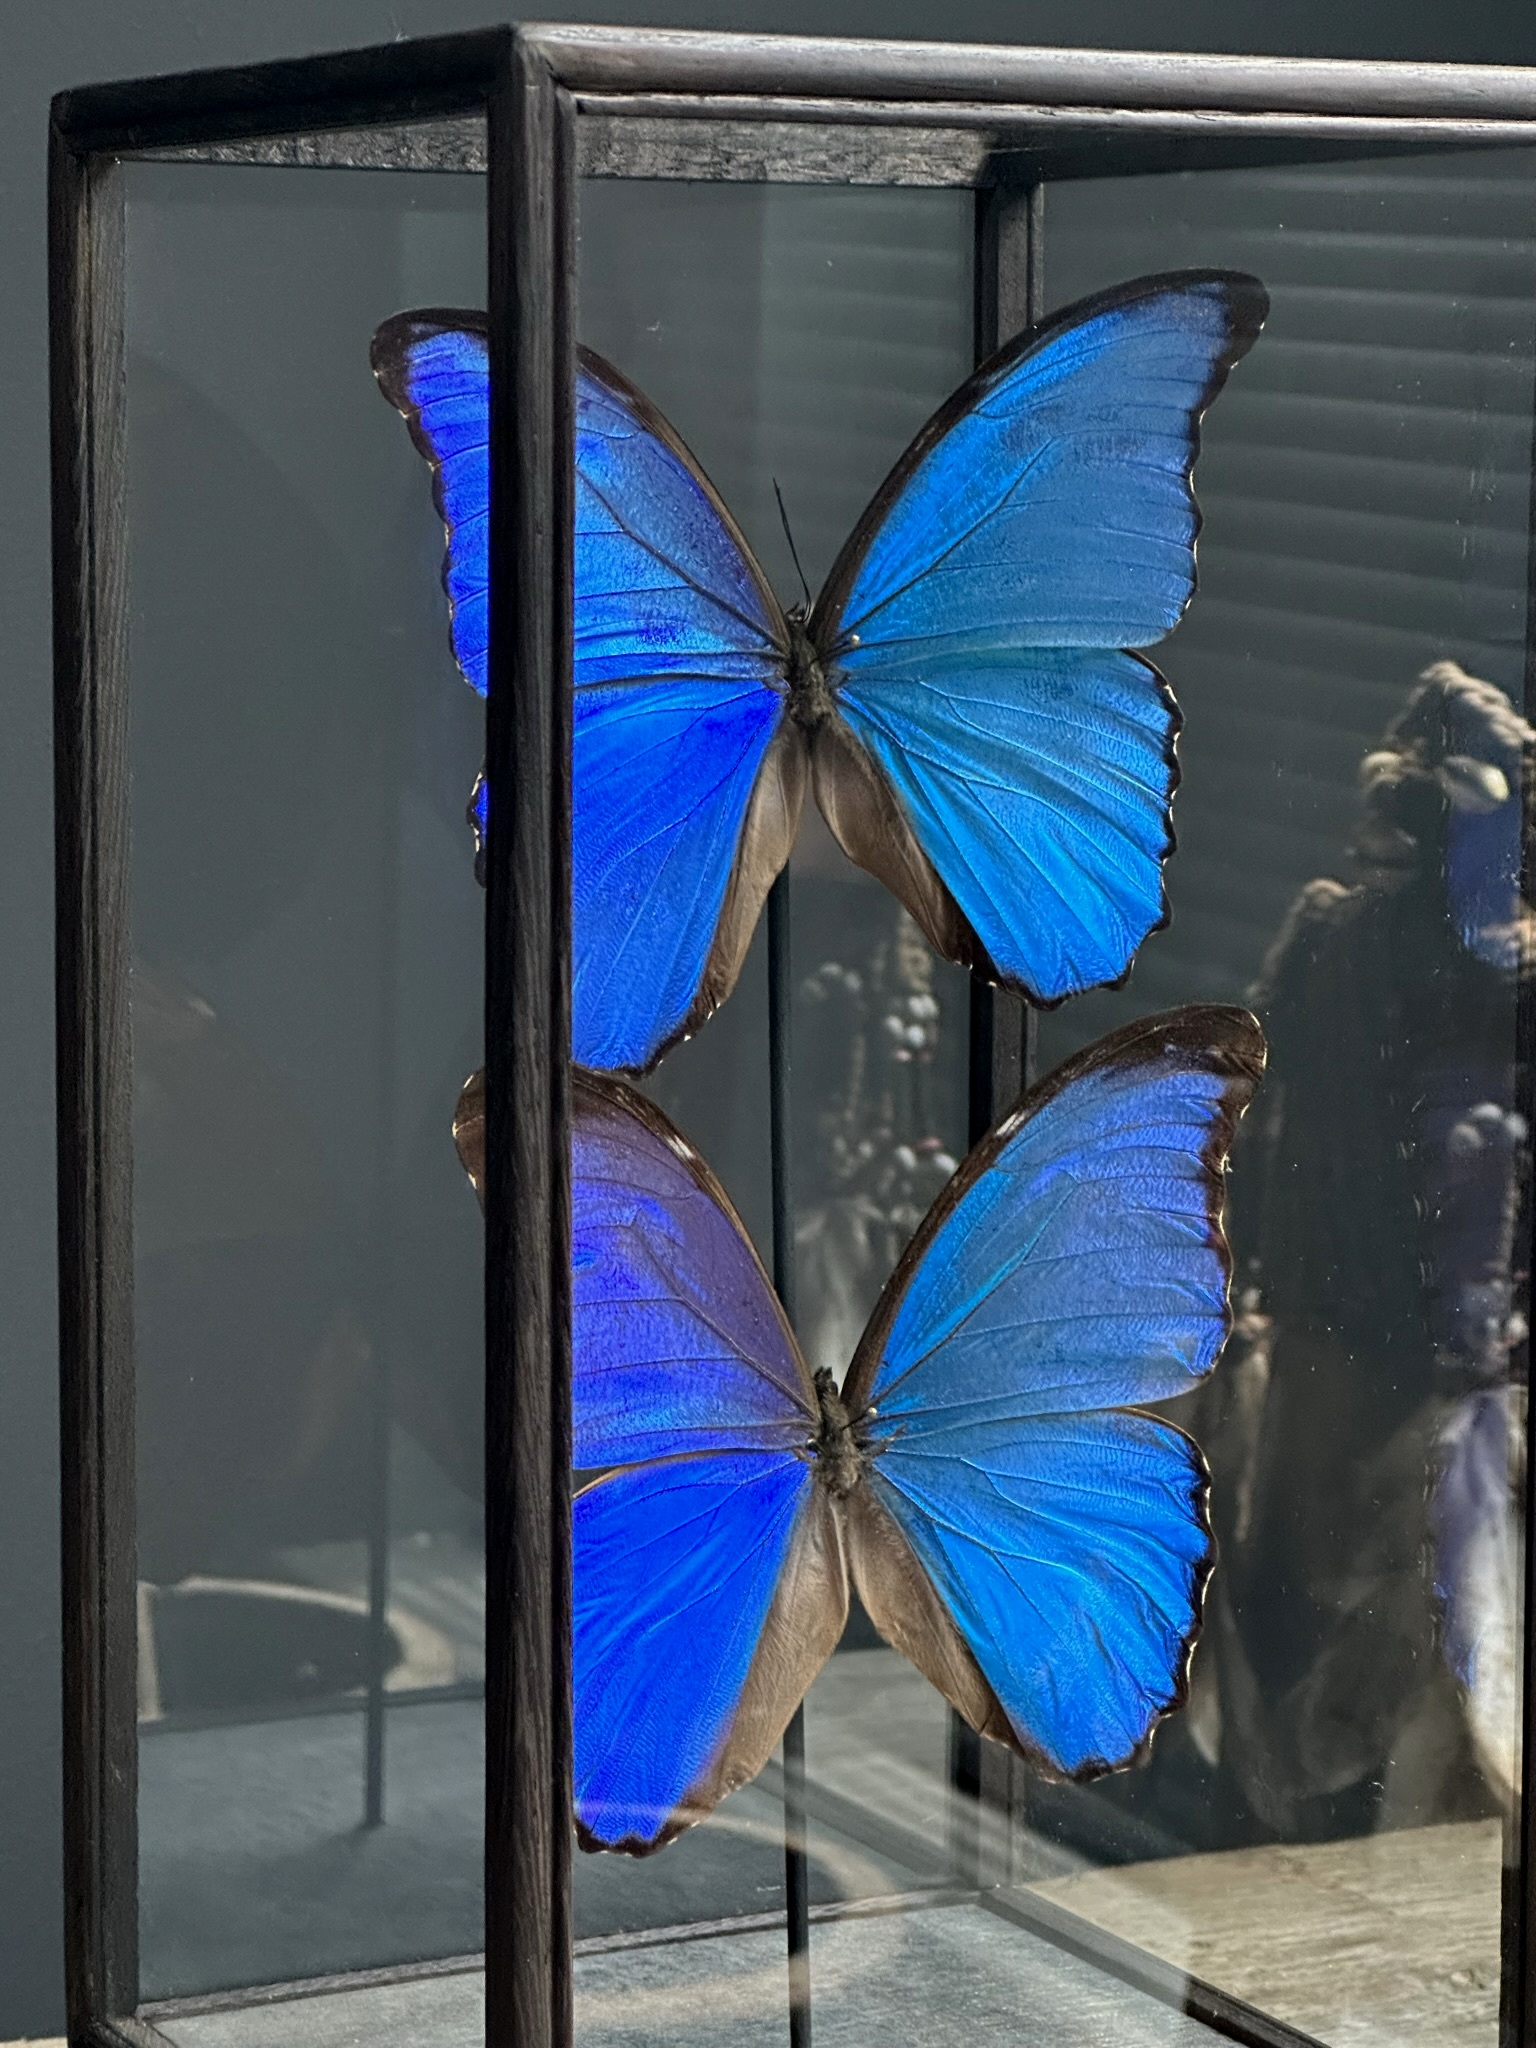 Vitrine met 2 Morpho vlinders,